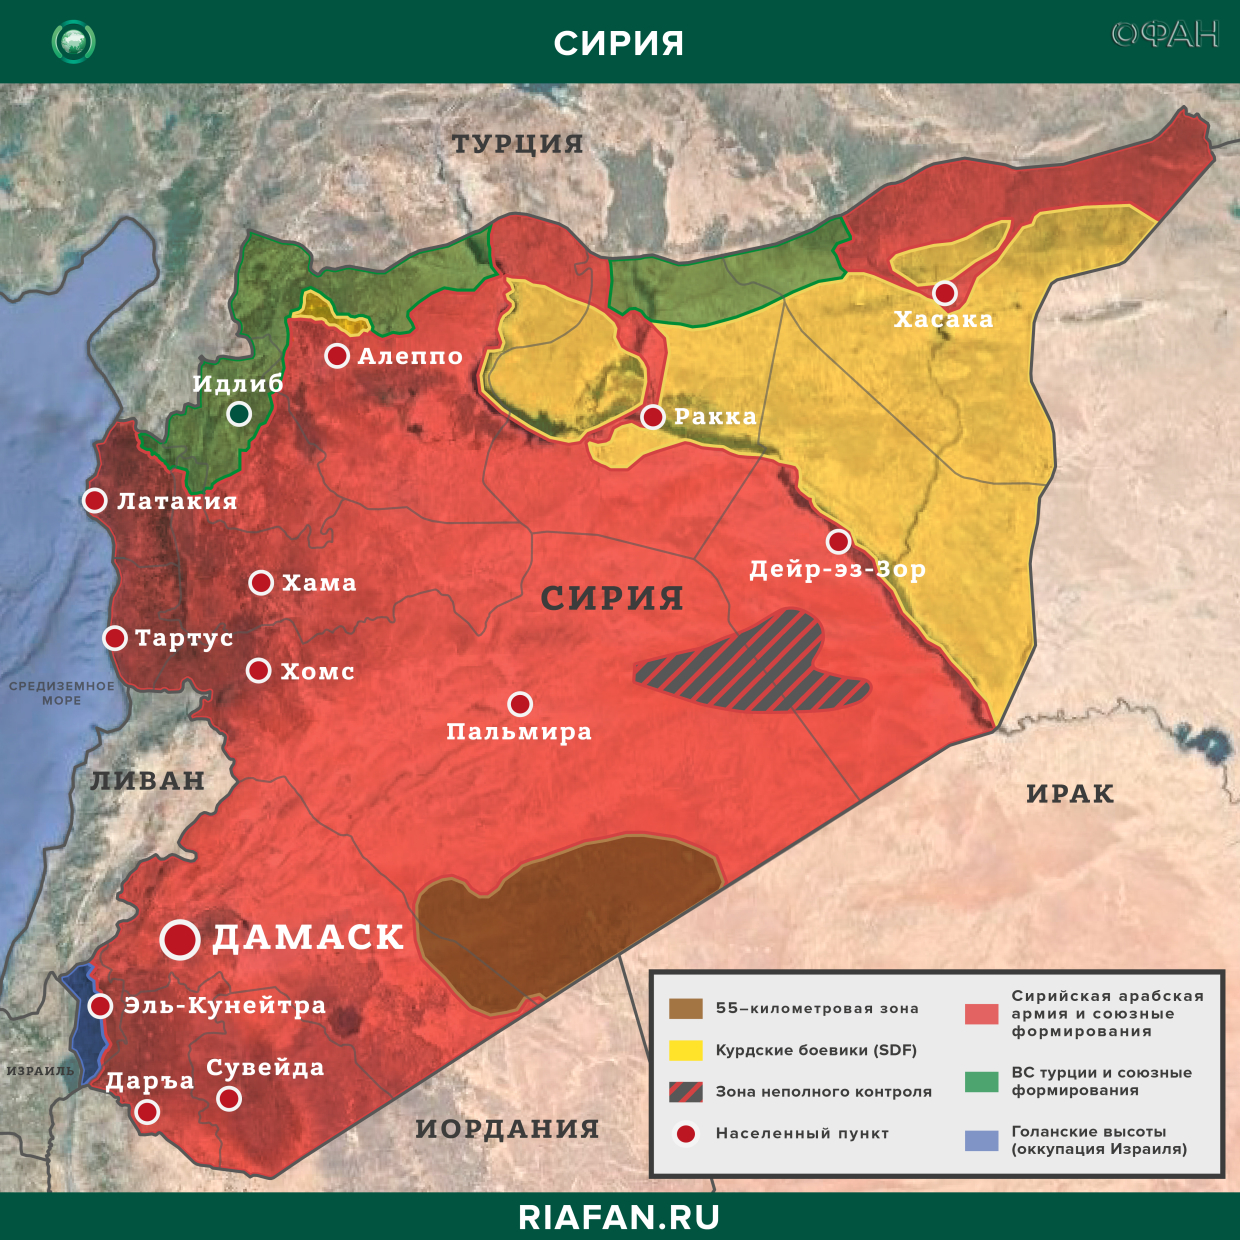 Noticias de Siria 31 Agosto 16.30: ВС Турции начали строительство нового блокпоста в Идлибе